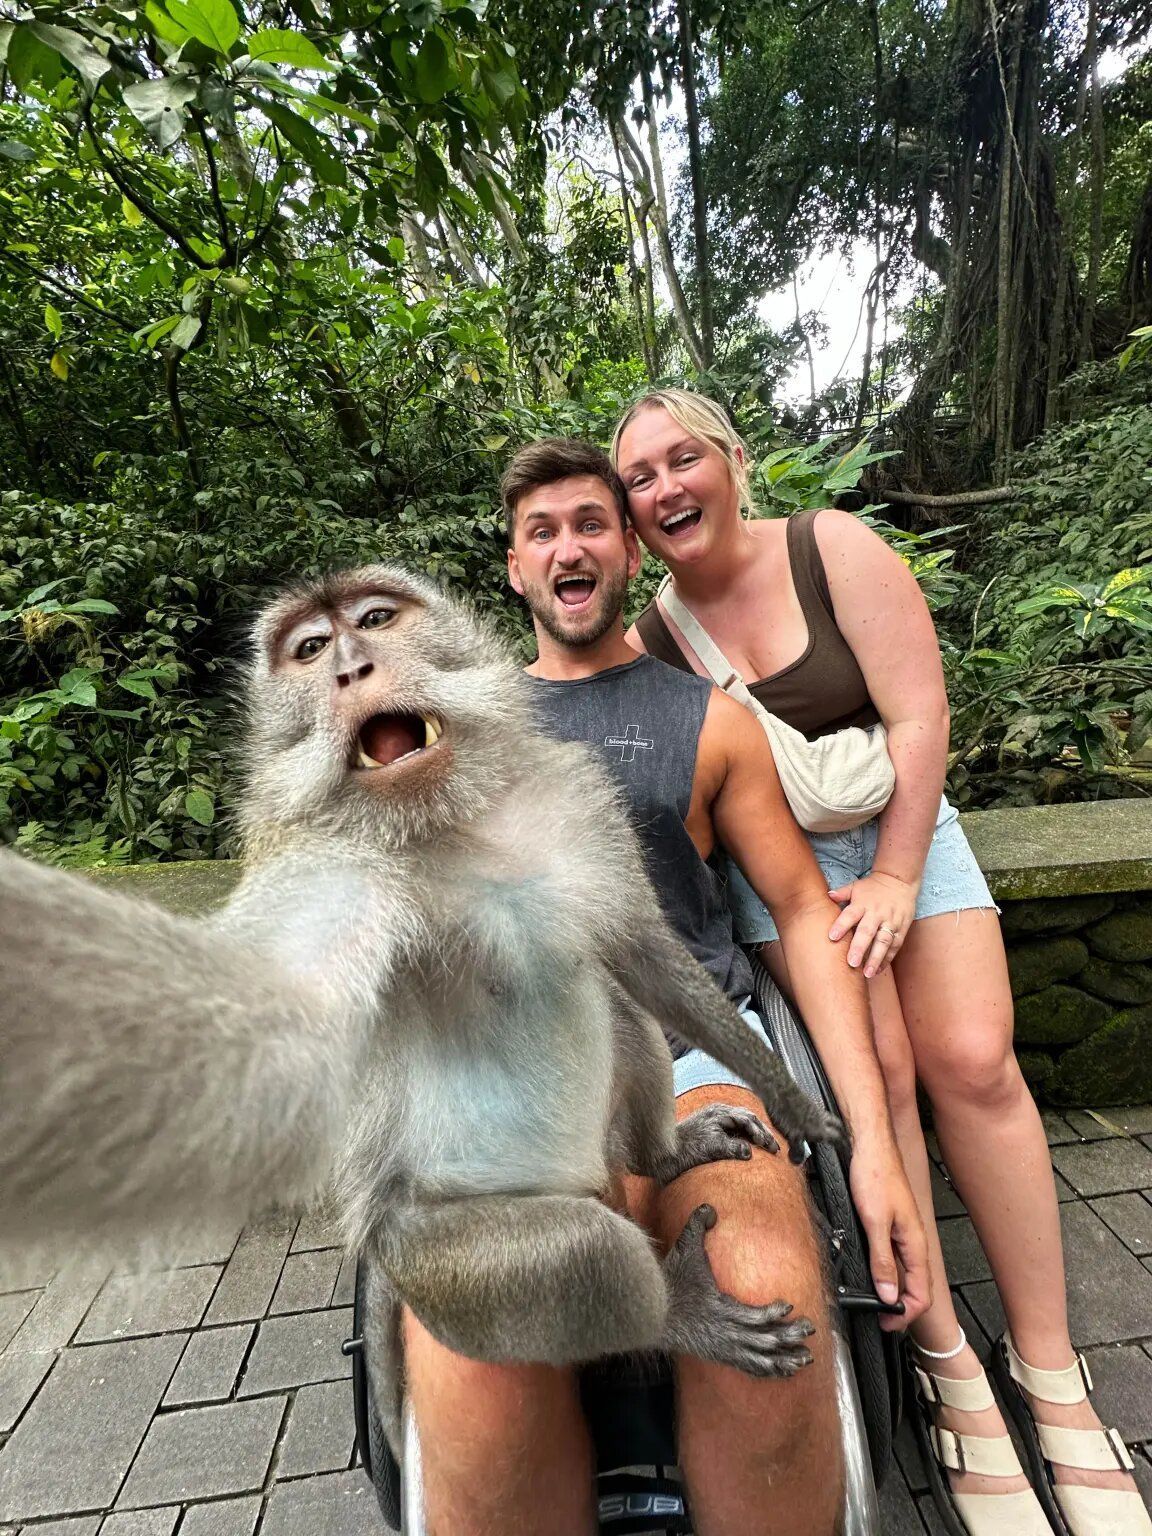 Глоя та Крейг із мавпою / Фото: @mrschlodennis/ CATERS NEWS / © 